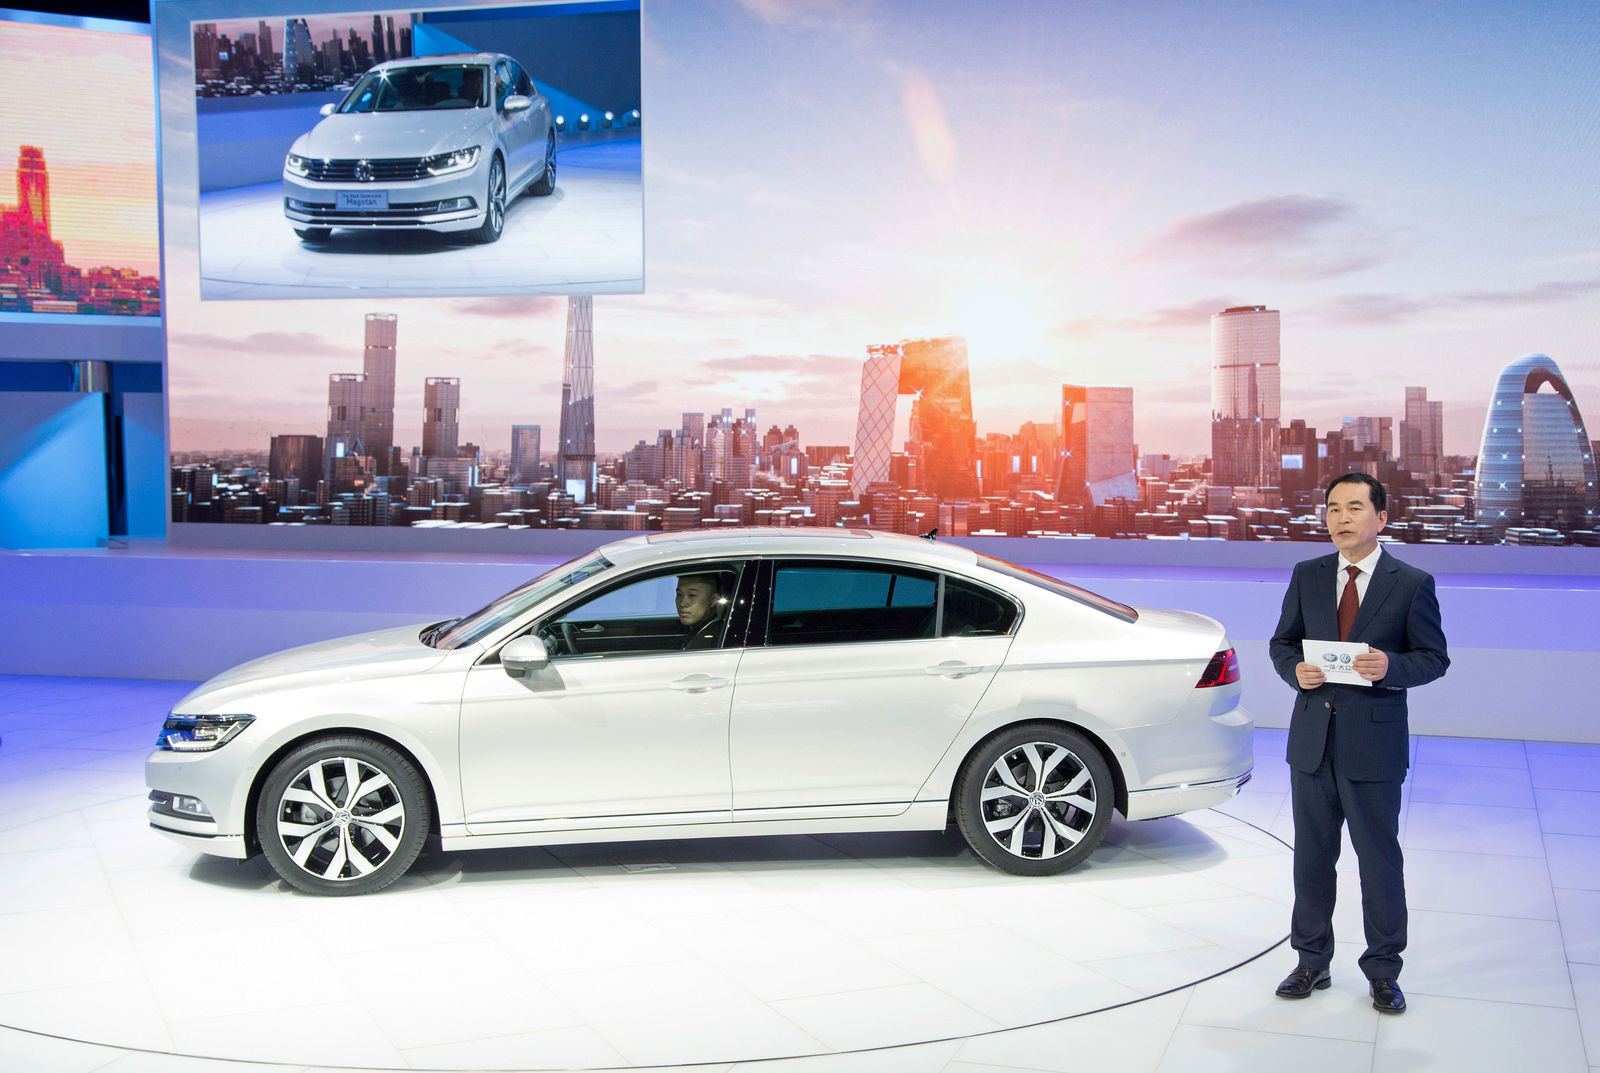 Volkswagen Pressekonferenz auf der Auto China 2016 in Peking